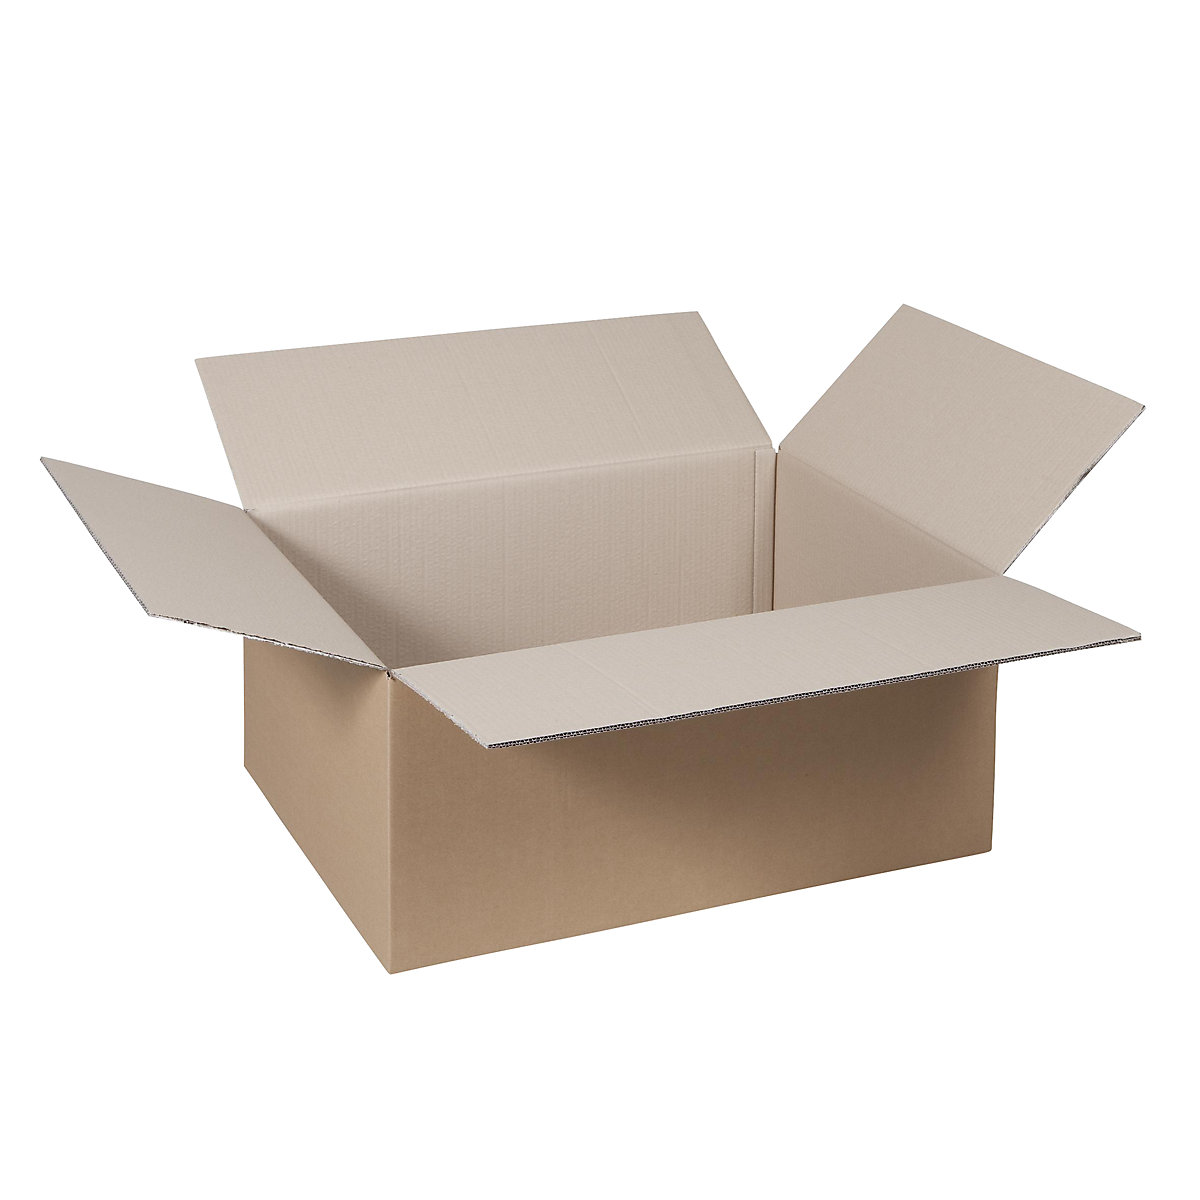 Cutie de carton pliantă, FEFCO 0201, cu 2 straturi de carton ondulat, dimensiuni interioare 315 x 220 x 90 mm, amb. 100 buc.-37